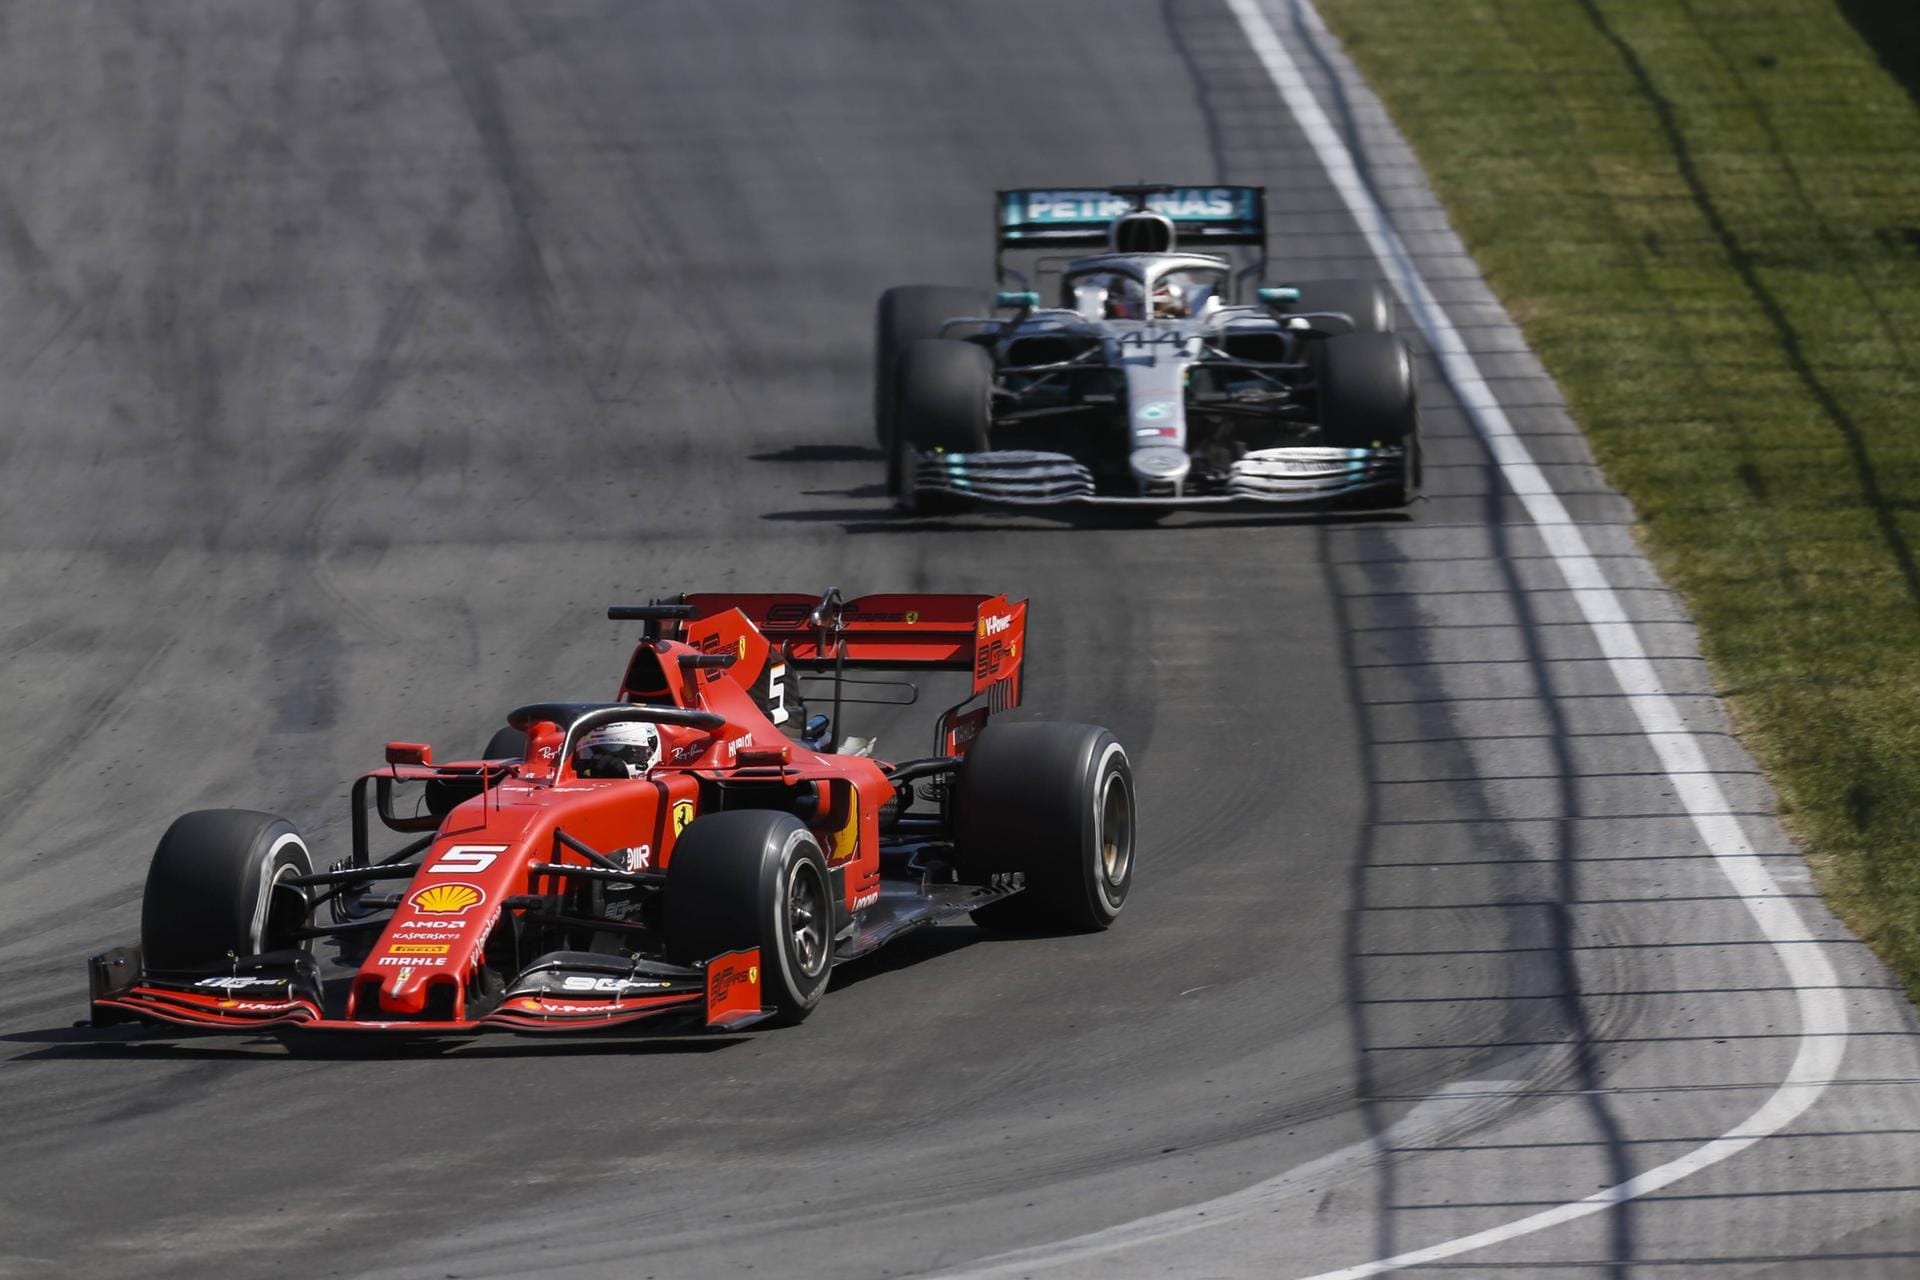 Sport: "Die FIA schenkt Hamilton den Sieg, selbst als Zweiter gewinnt Mercedes. Vettel gewinnt das Rennen auf dem Asphalt, verliert aber den Triumph am grünen Tisch nach einer Zeitstrafe. Polemischer Erfolg von Lewis Hamilton in Kanada, dabei hatte Vettel den Engländer über das gesamte Rennen mehr oder weniger im Griff. Fünf Sekunden, eine harte Entscheidung."